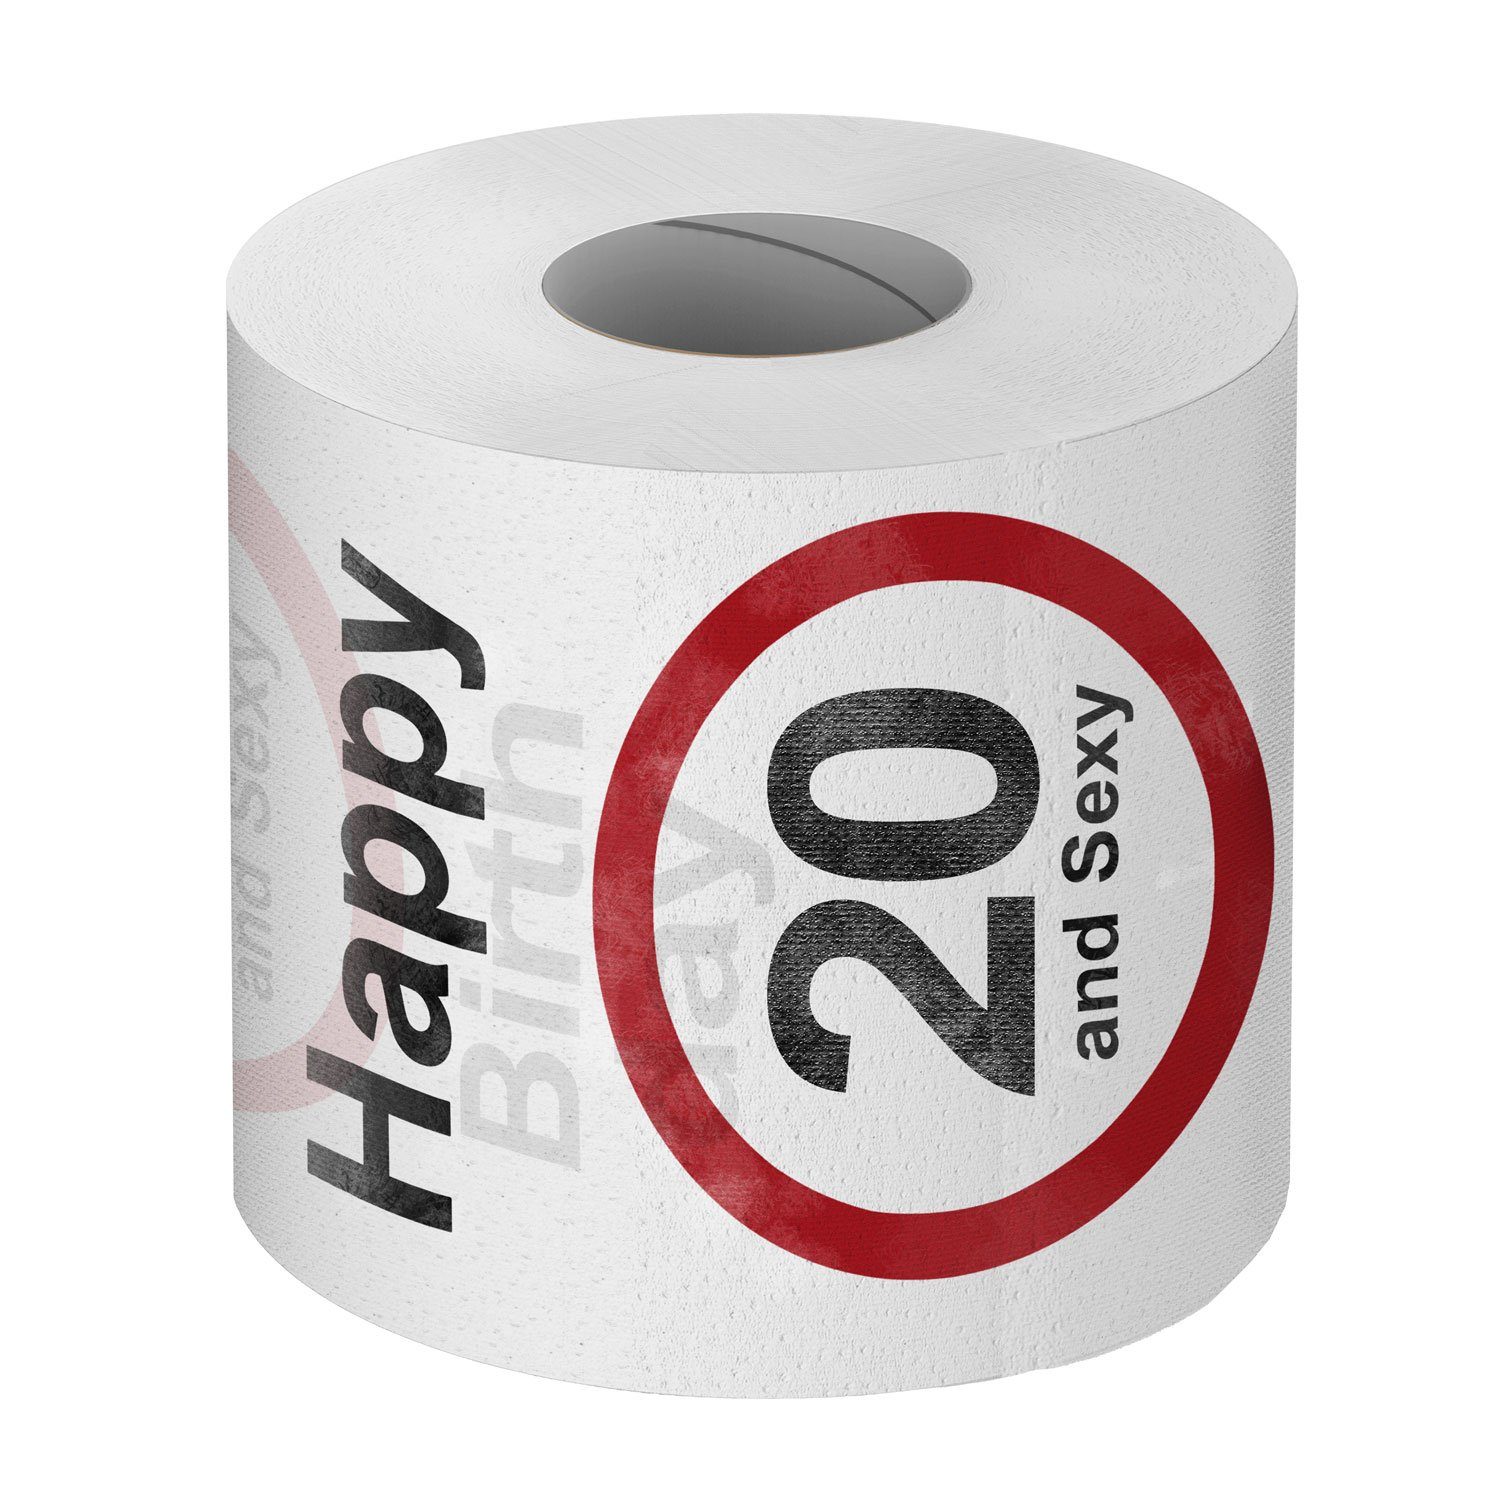 Toilettenpapier Klopapier Geschenkartikel Fun Goods+Gadgets Lustiges Geburtstag, Papierdekoration 20. zum